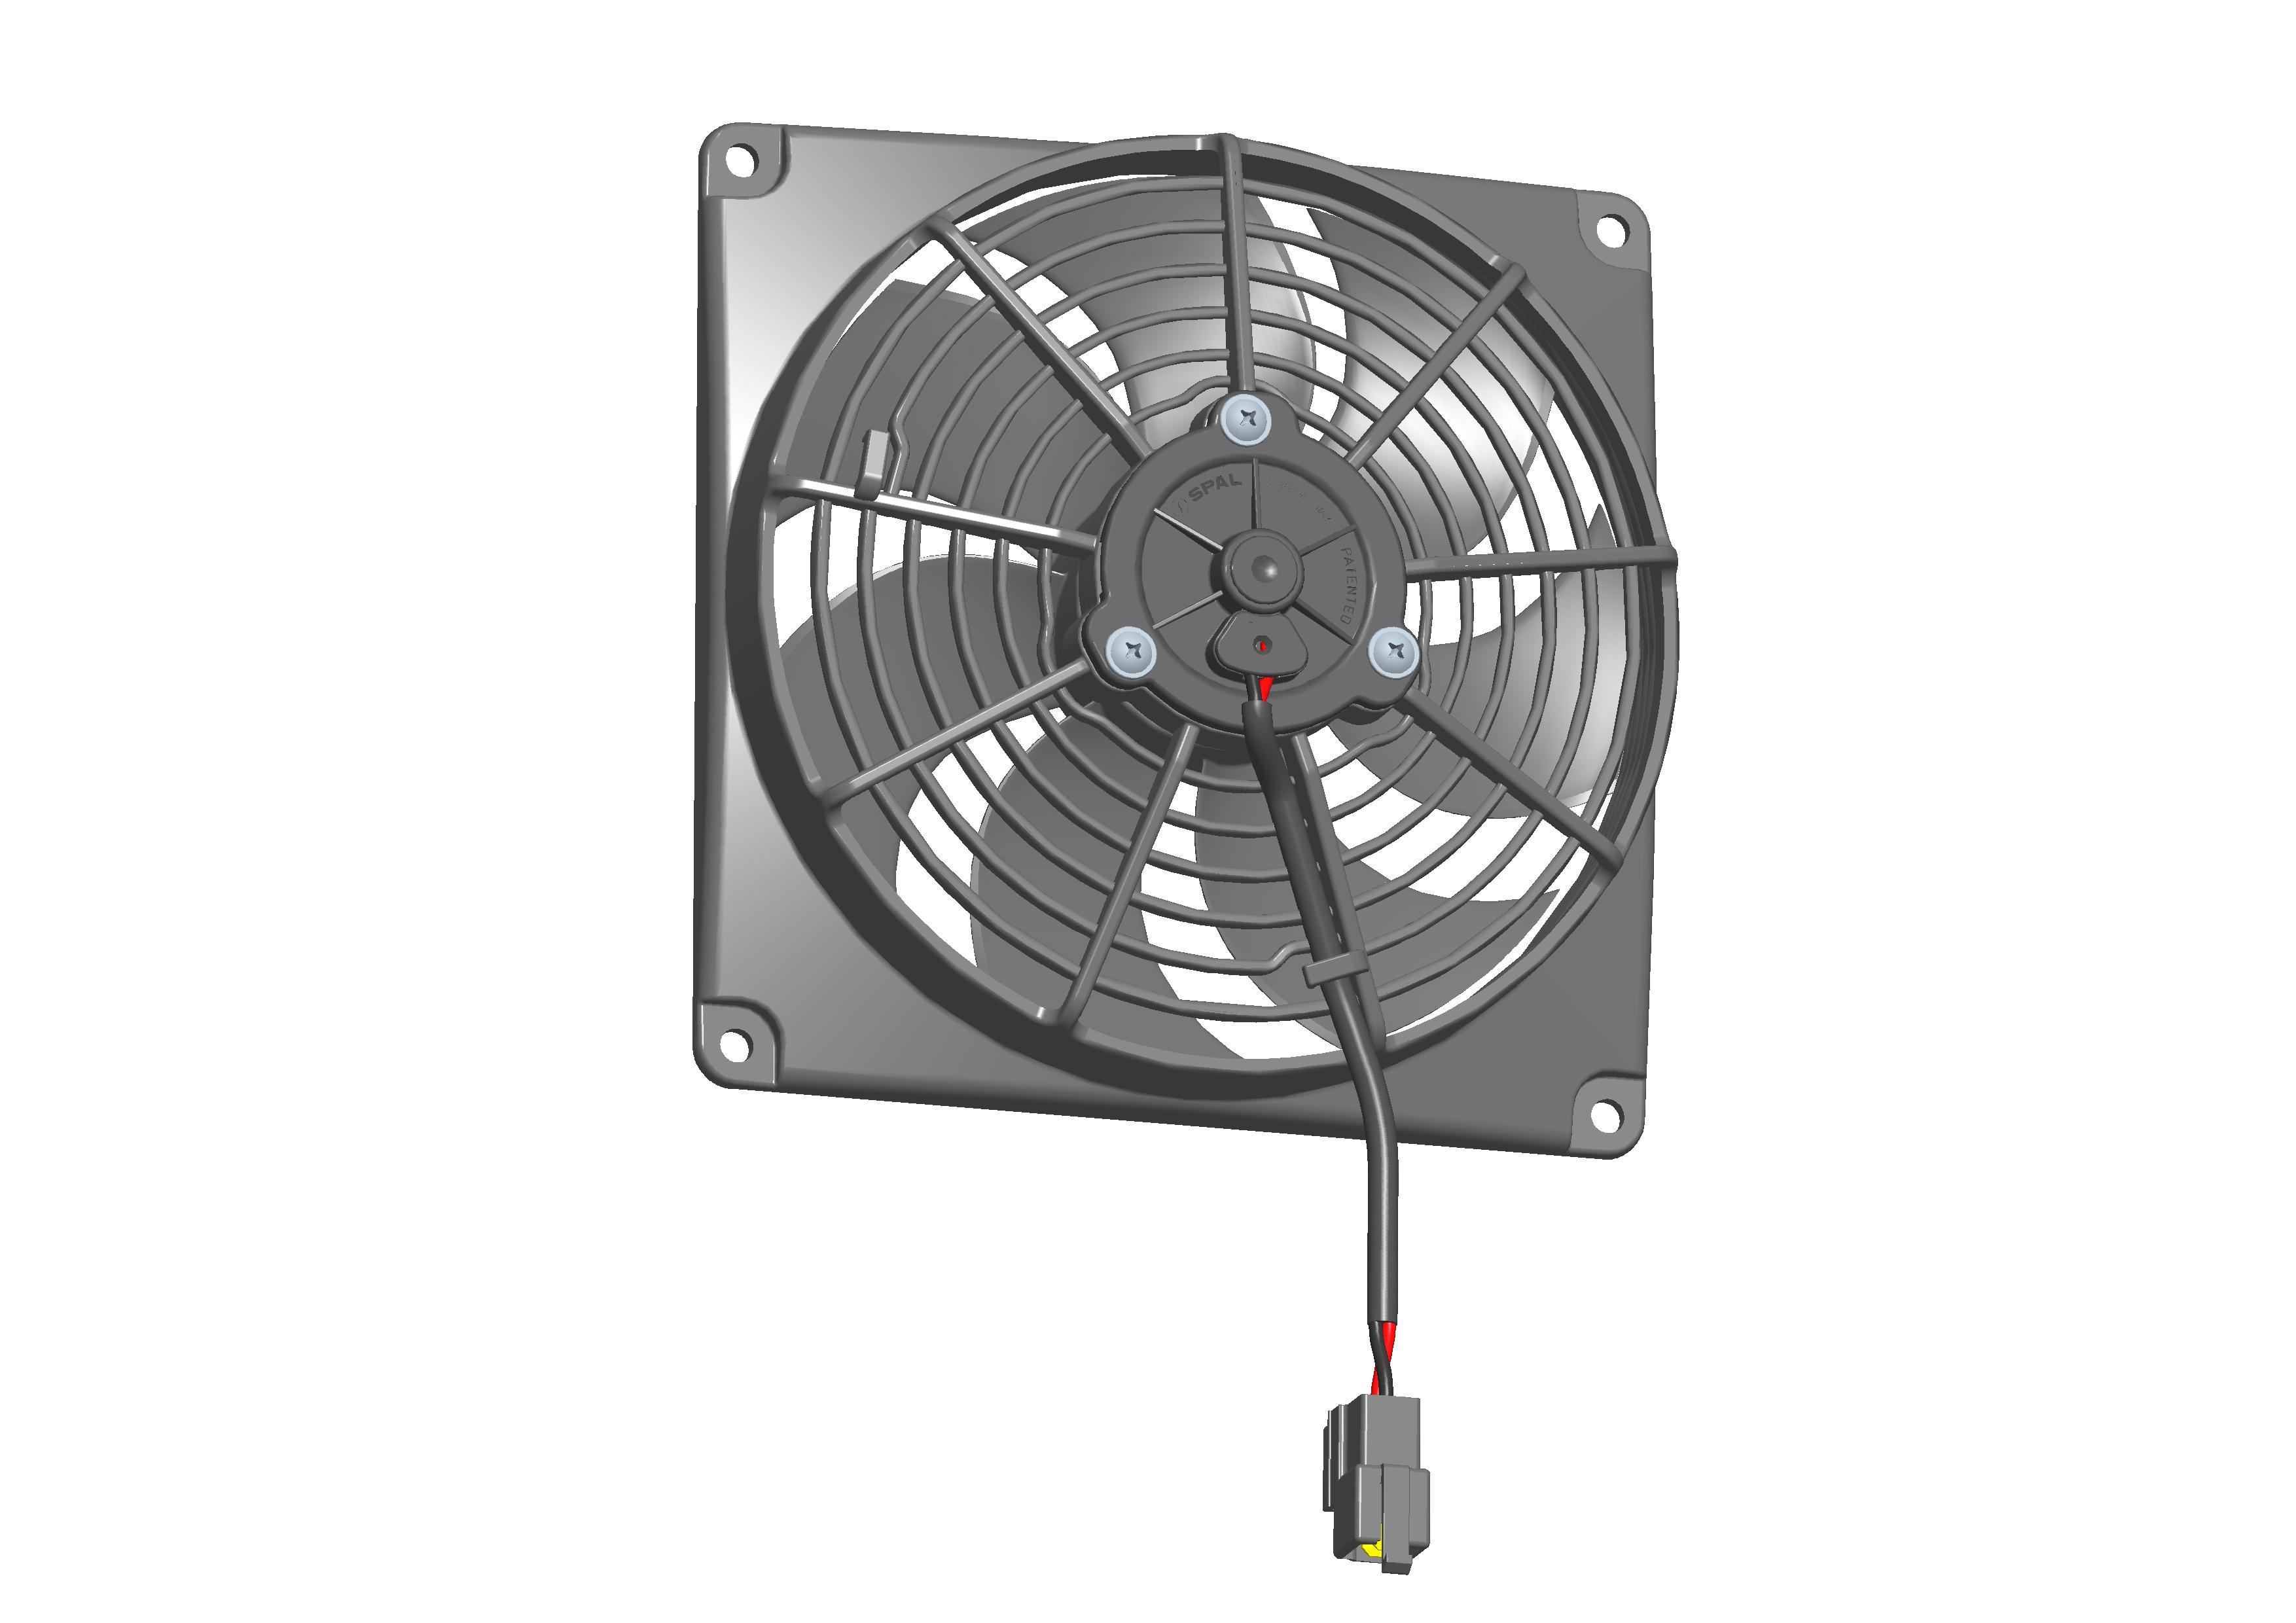 SPAL 6.5" (167mm) Cooling Fan VA68-A101-83A 12V SUMIT (12v / 314 cfm / Pulling)